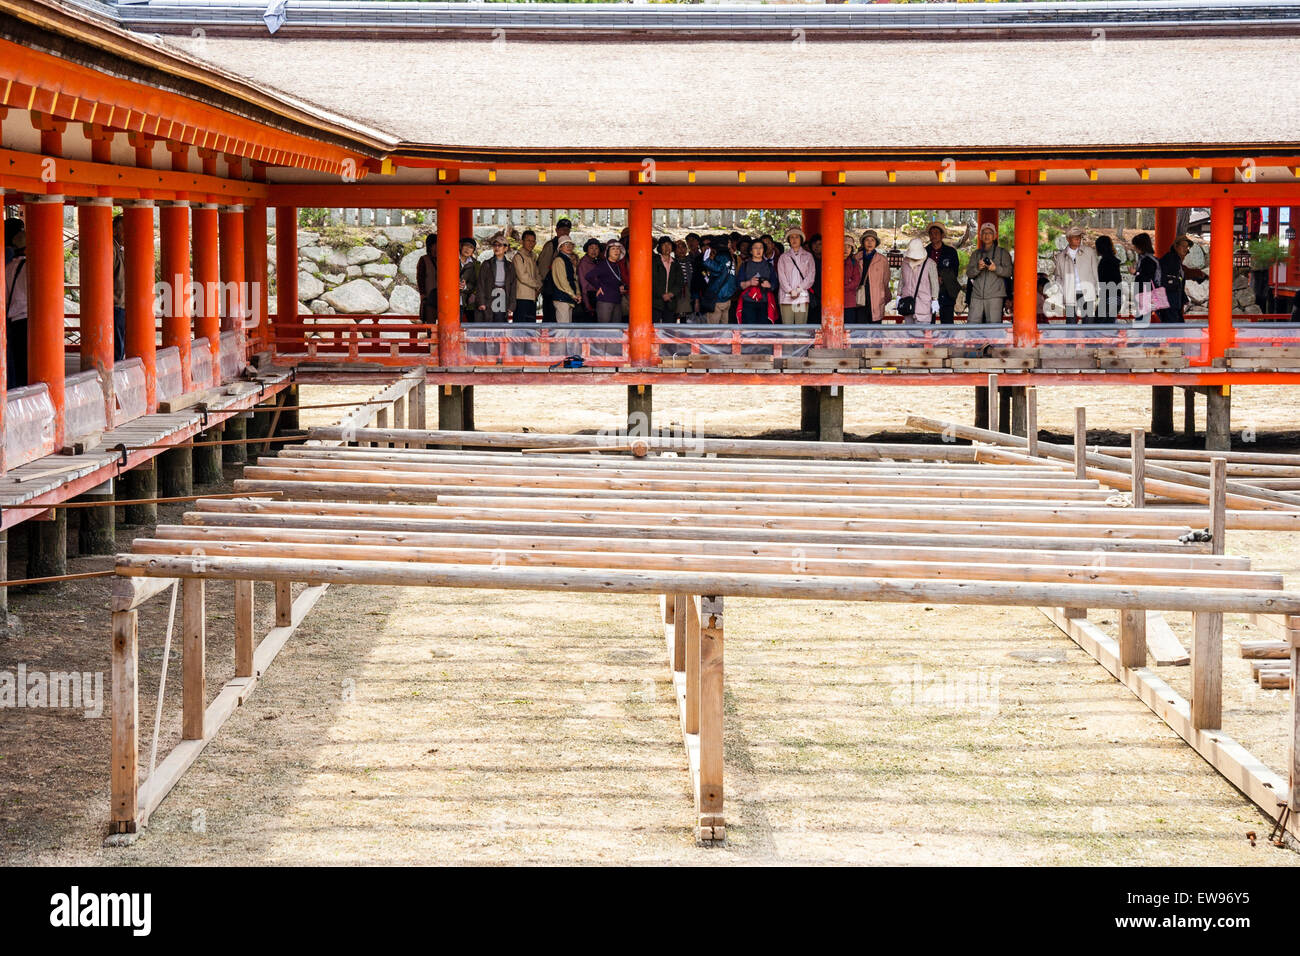 Corridoi sopraelevati Vermilion del santuario di Iksukushima, una popolare destinazione turistica sull'isola di Miyajima. Costruito nello stile architettonico Shinden. Foto Stock